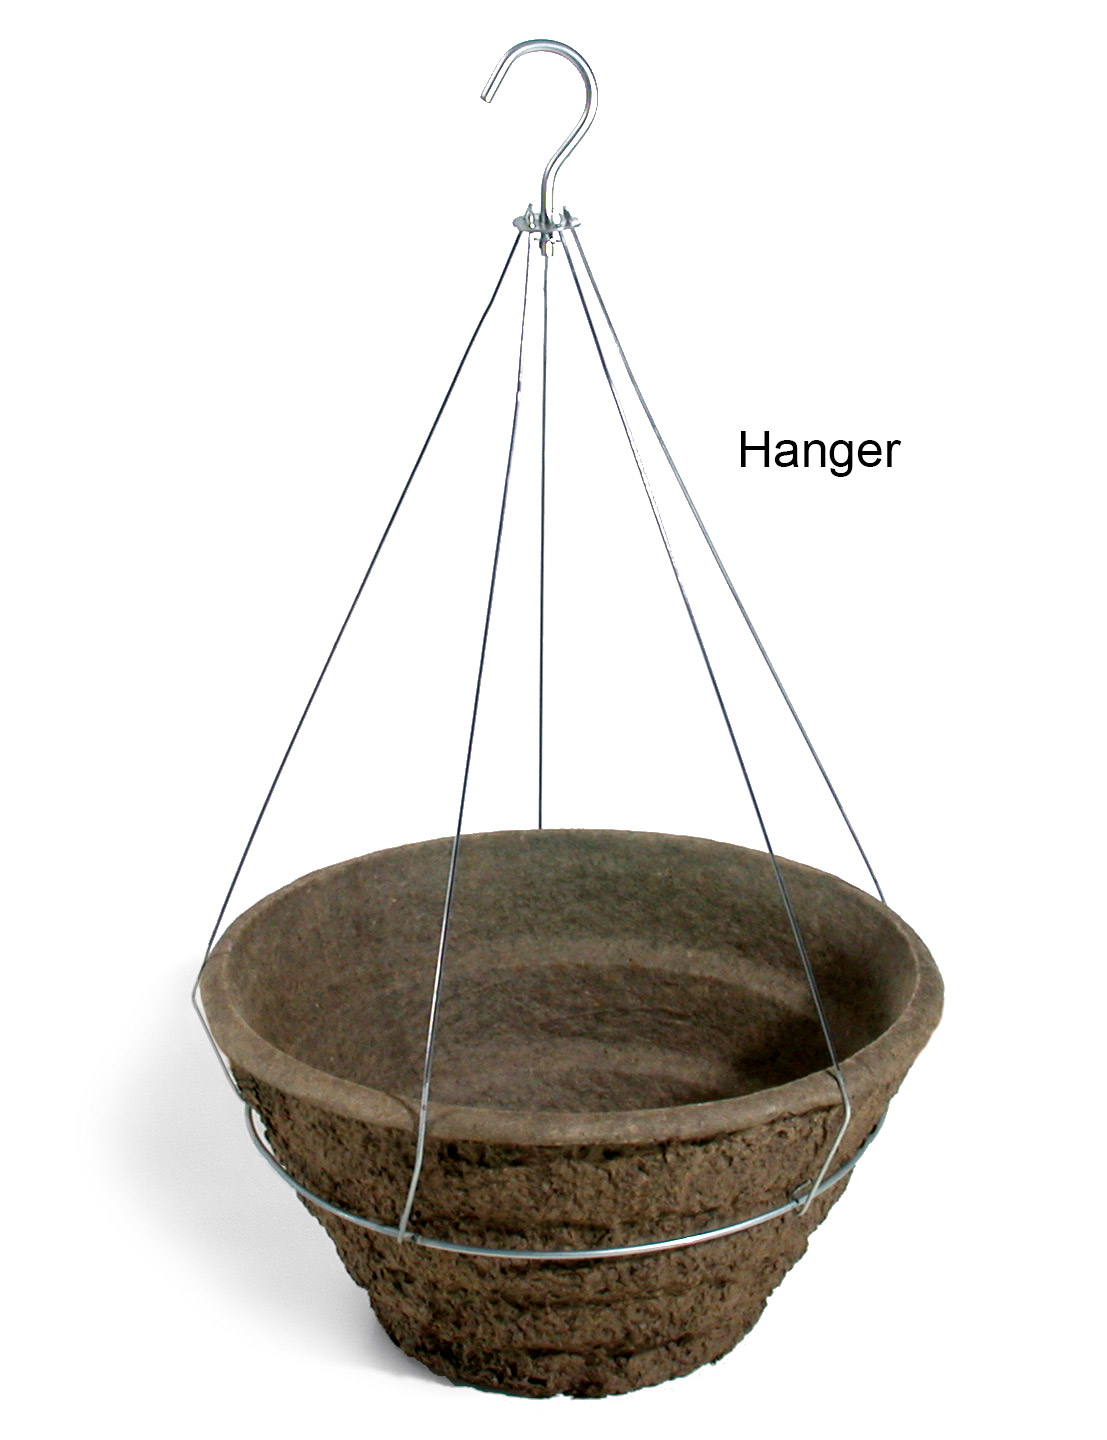 16 Garden Basket Hanger - 20 per case - Hangers